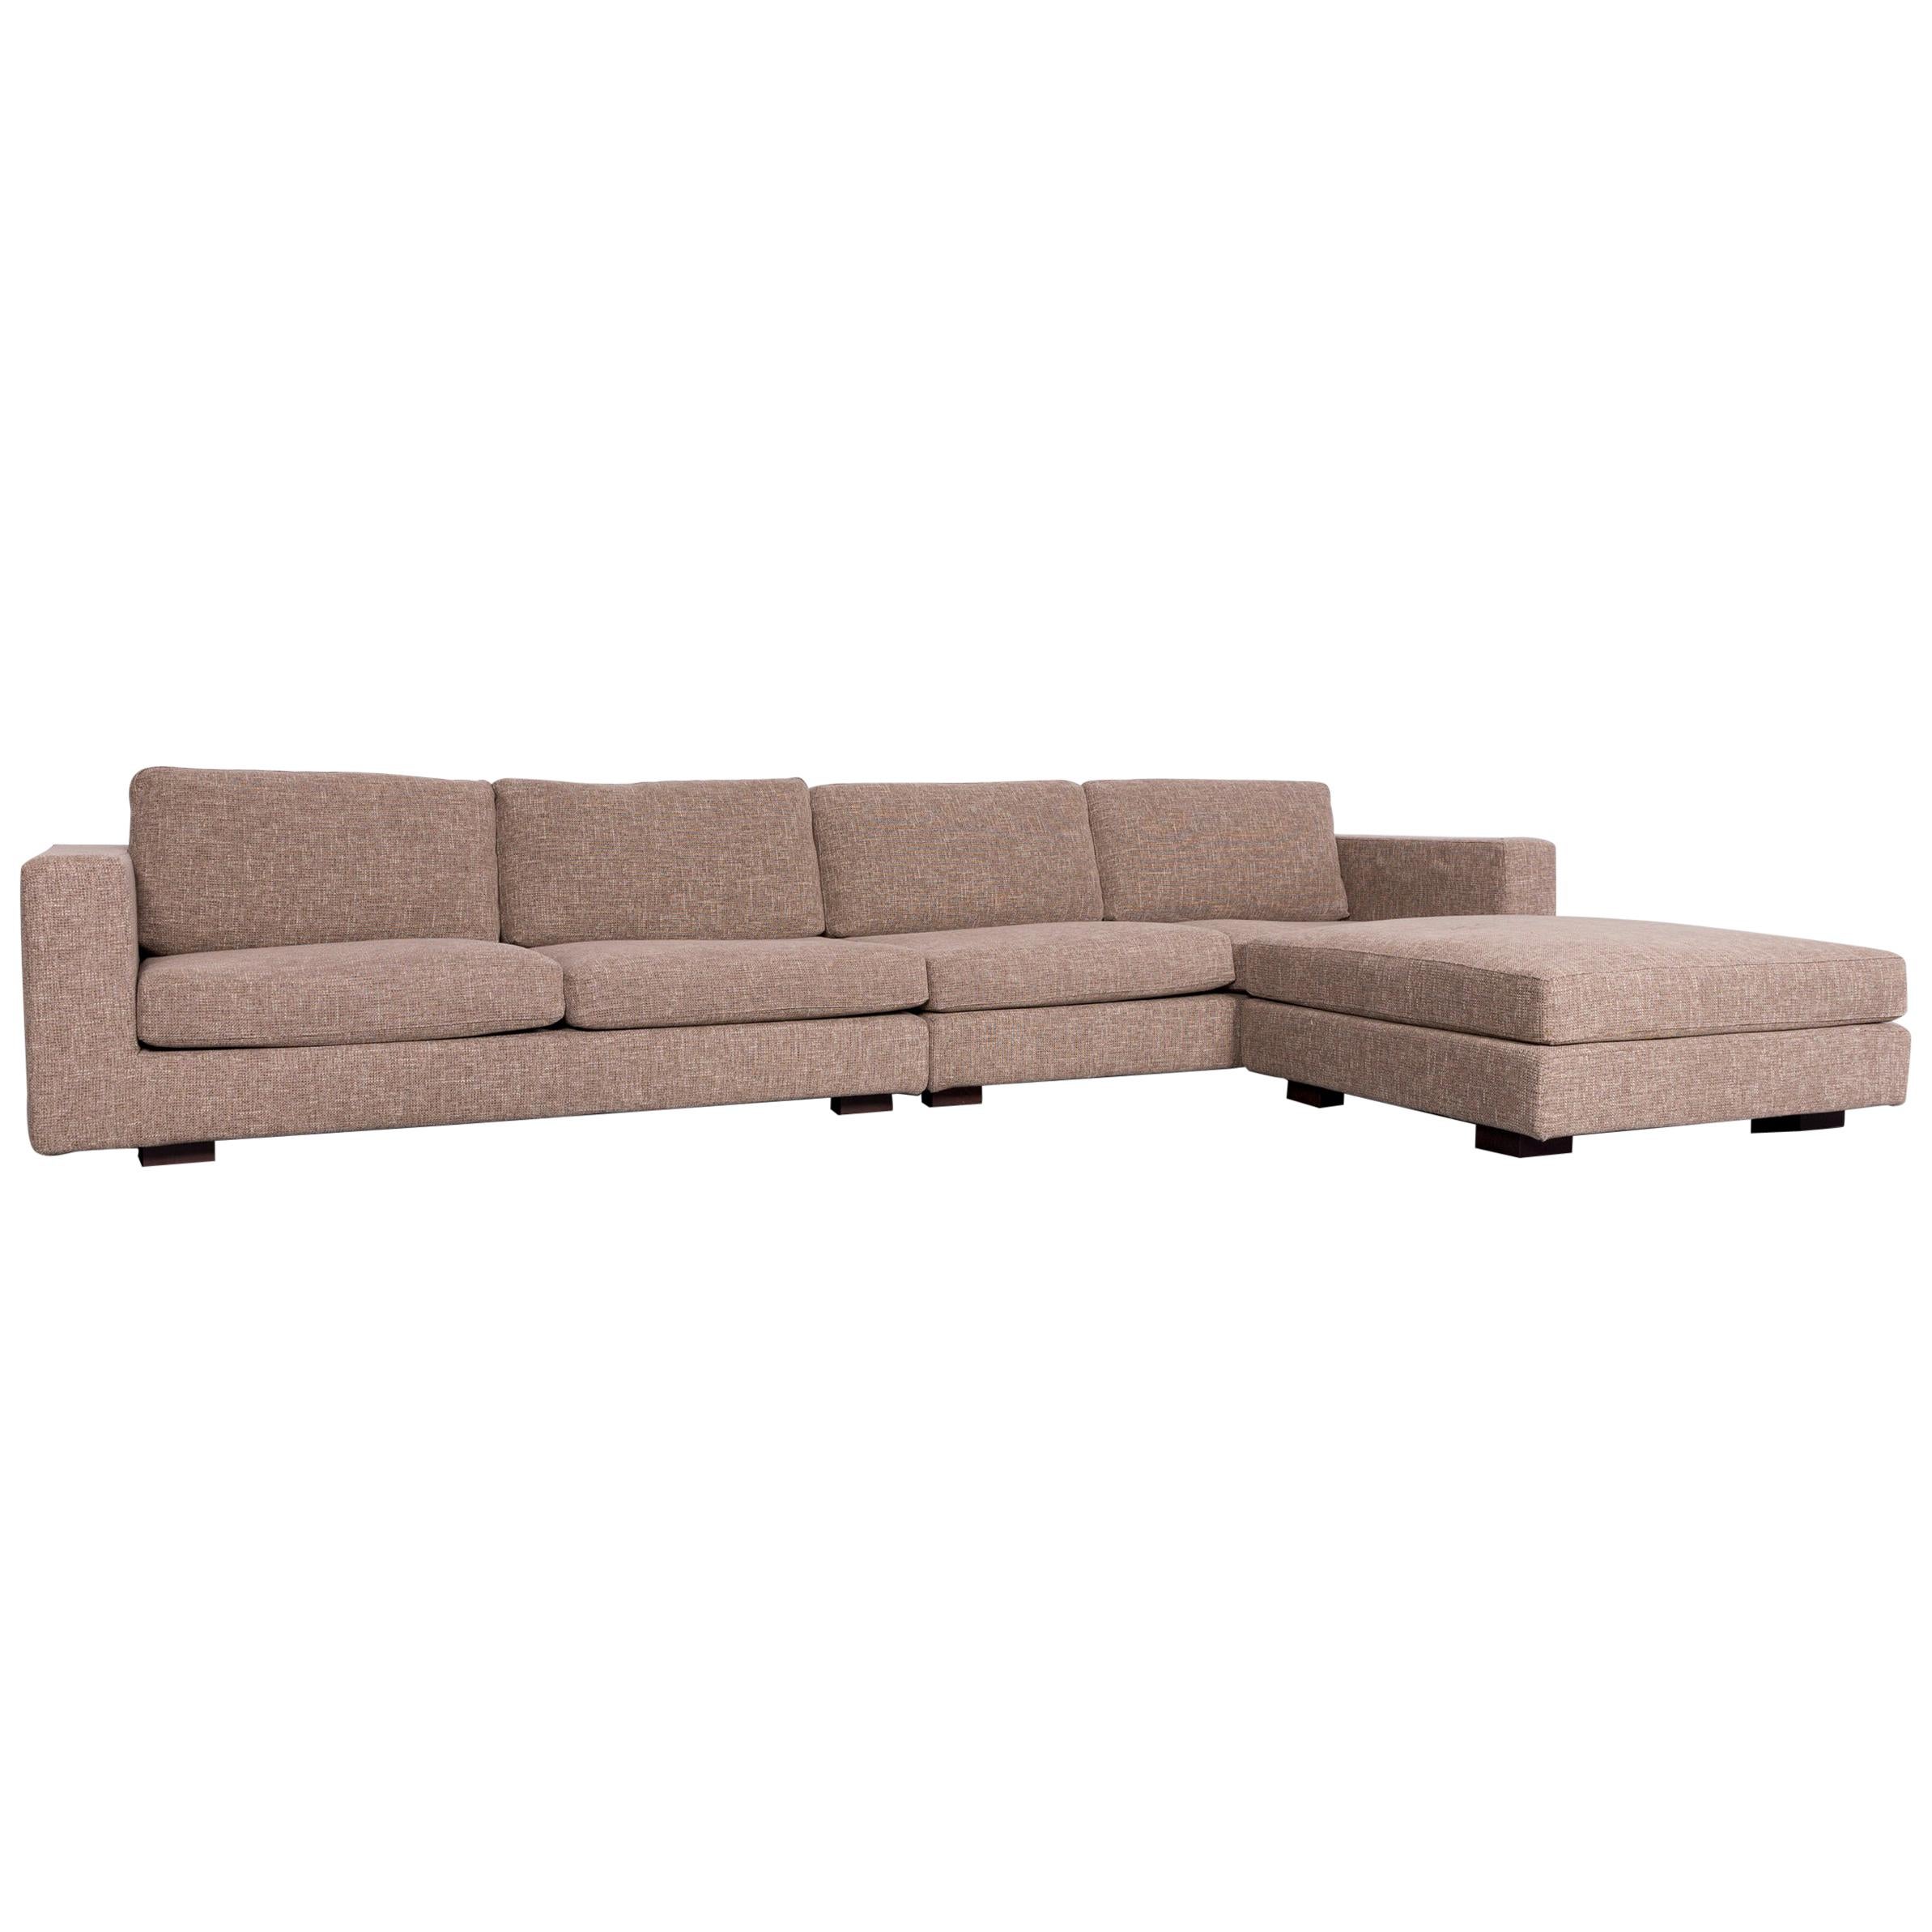 Minotti Hilton Designer Fabric Sofa Brown Corner Couch For Sale